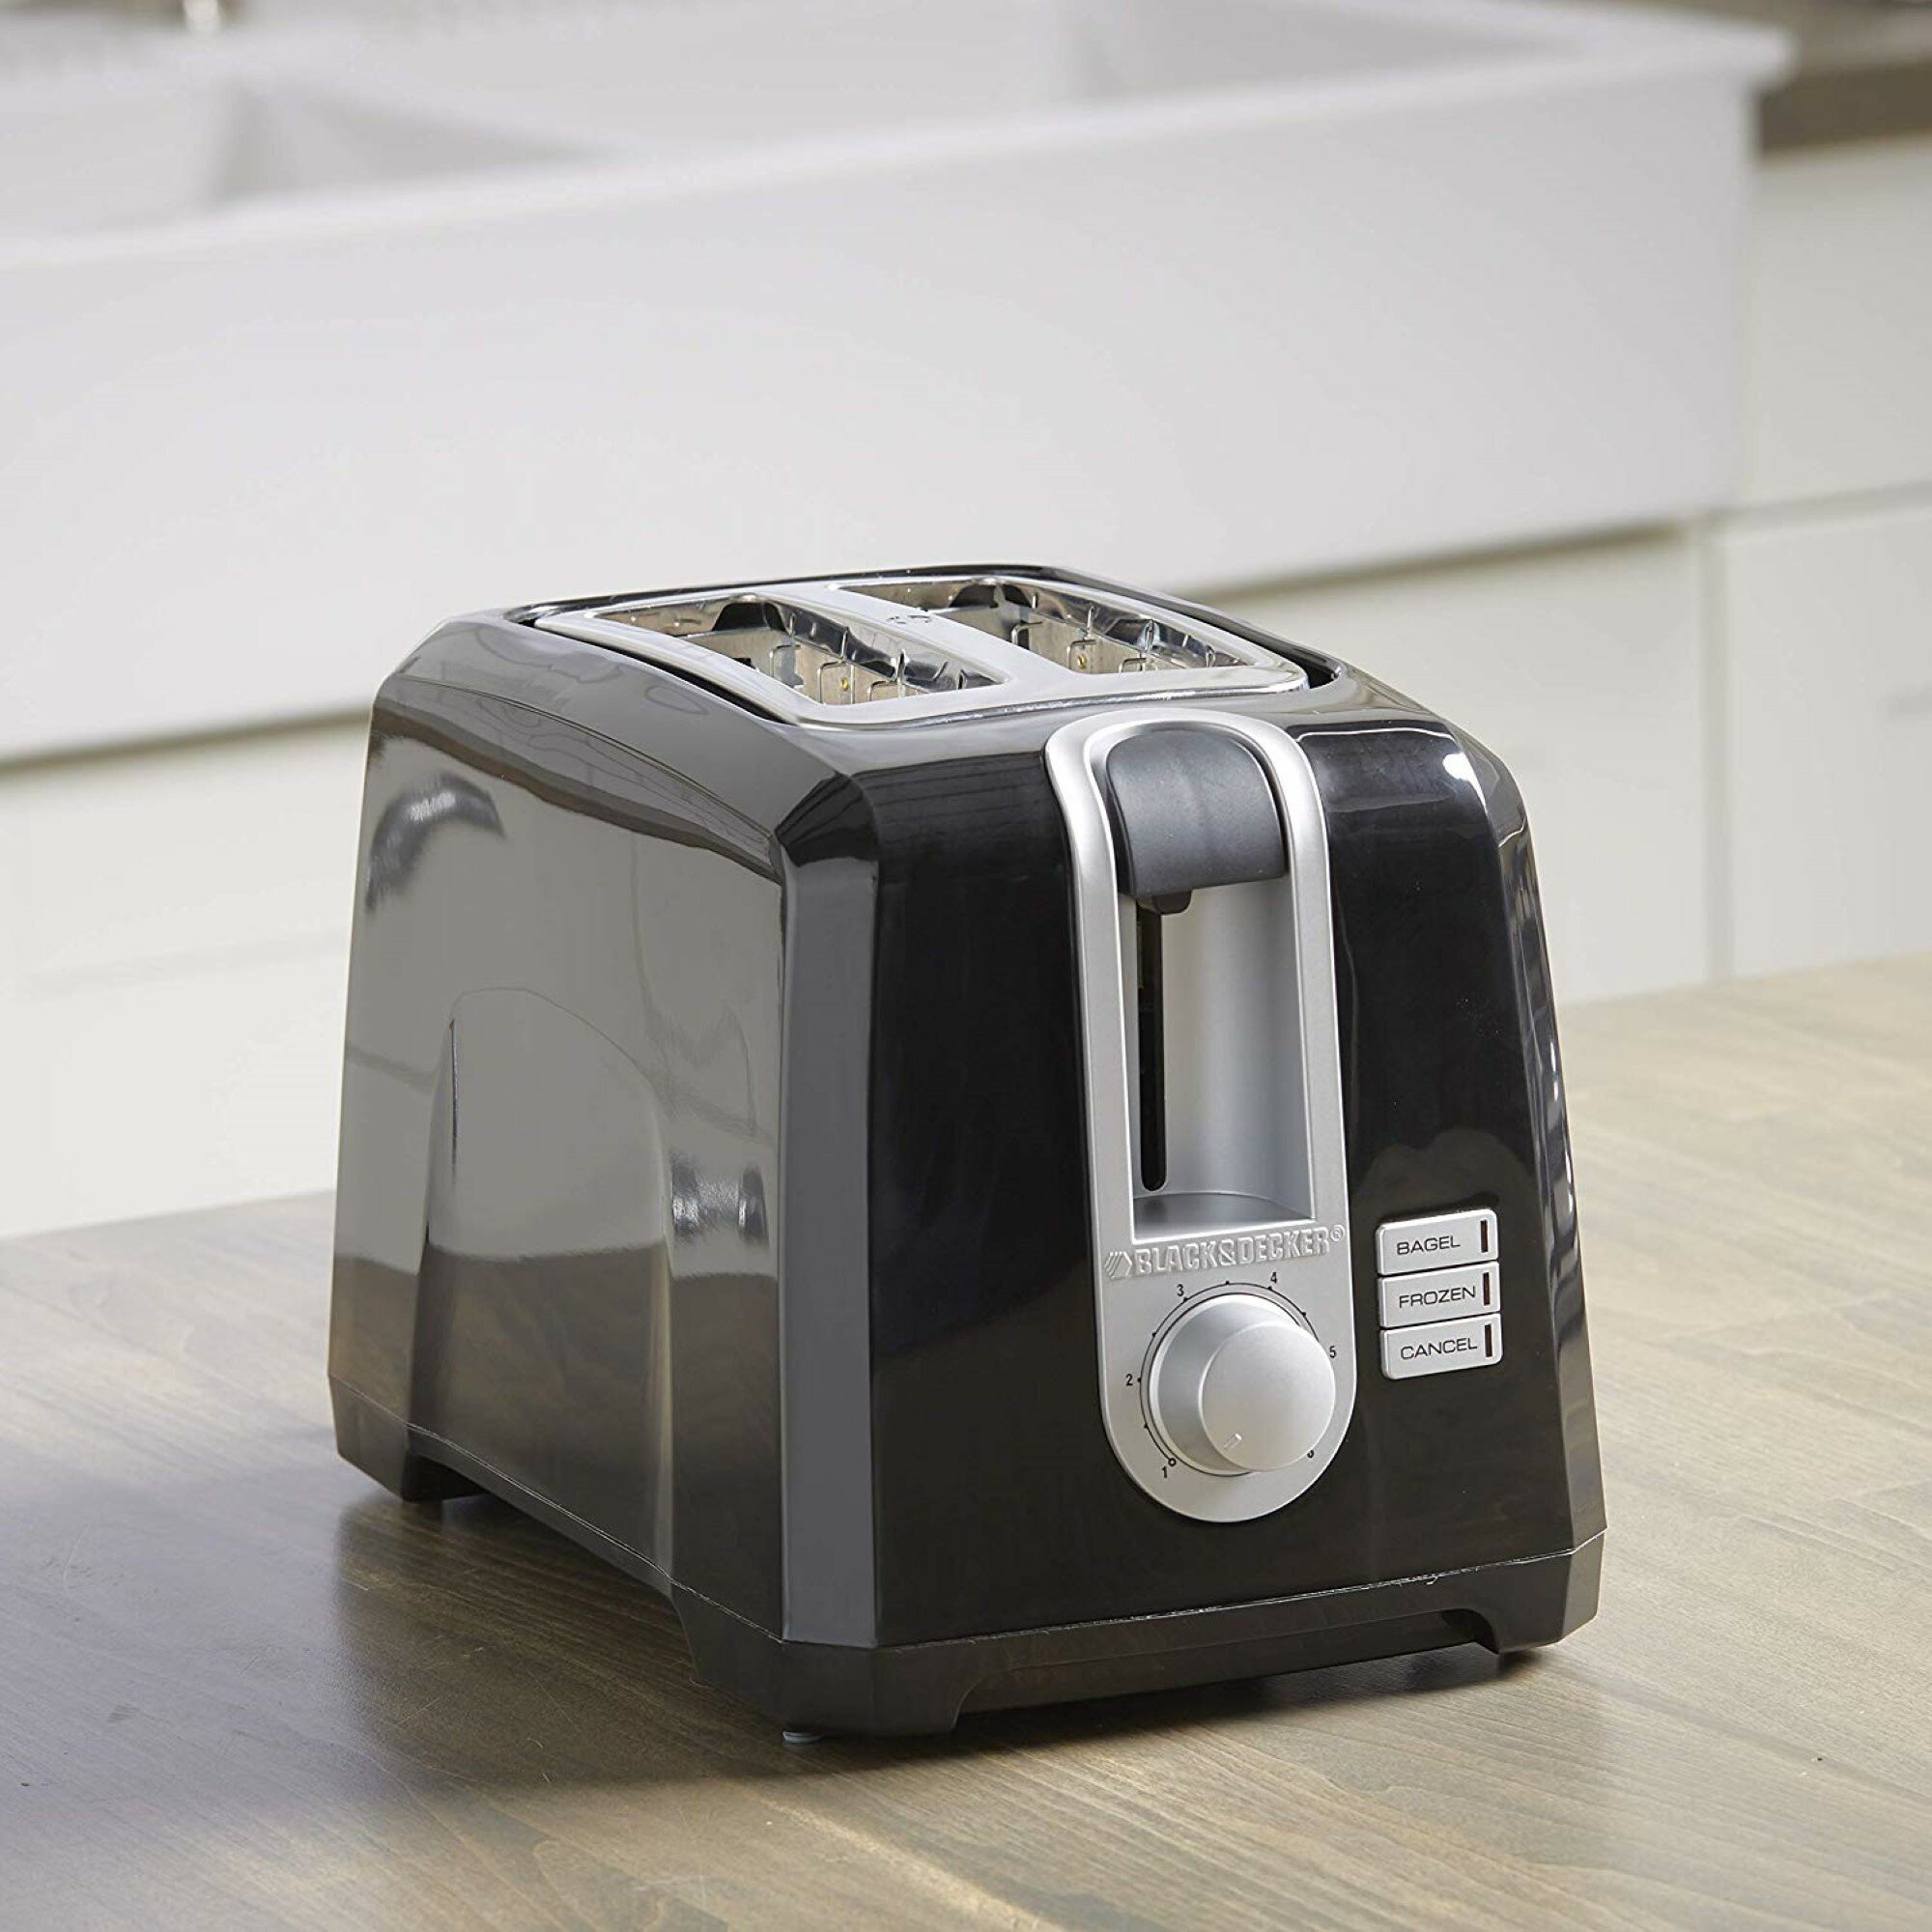 https://assets.wfcdn.com/im/97354198/compr-r85/9745/97454544/black-decker-2-slice-extra-wide-slot-toaster.jpg